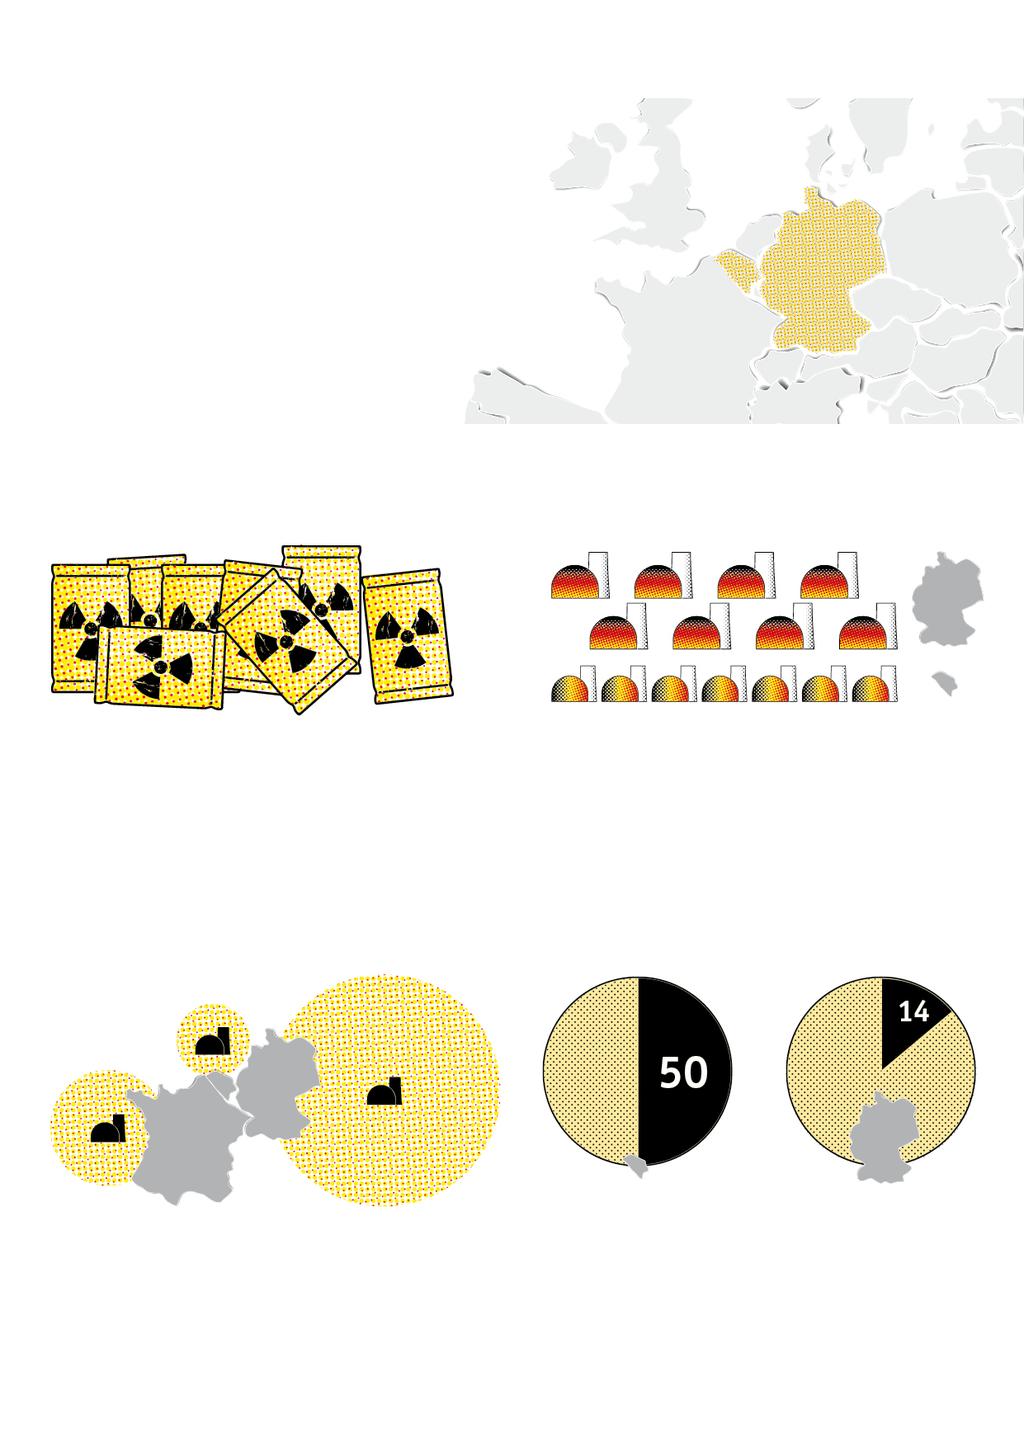 Titel 90 Kilometer gegen das Atom-Risiko Belgien Deutschland 5 Hintergrund Sieben bisweilen überraschende Fakten zur Atomkraft westlich und östlich von Aachen 1 Wo fällt mehr Atommüll an?